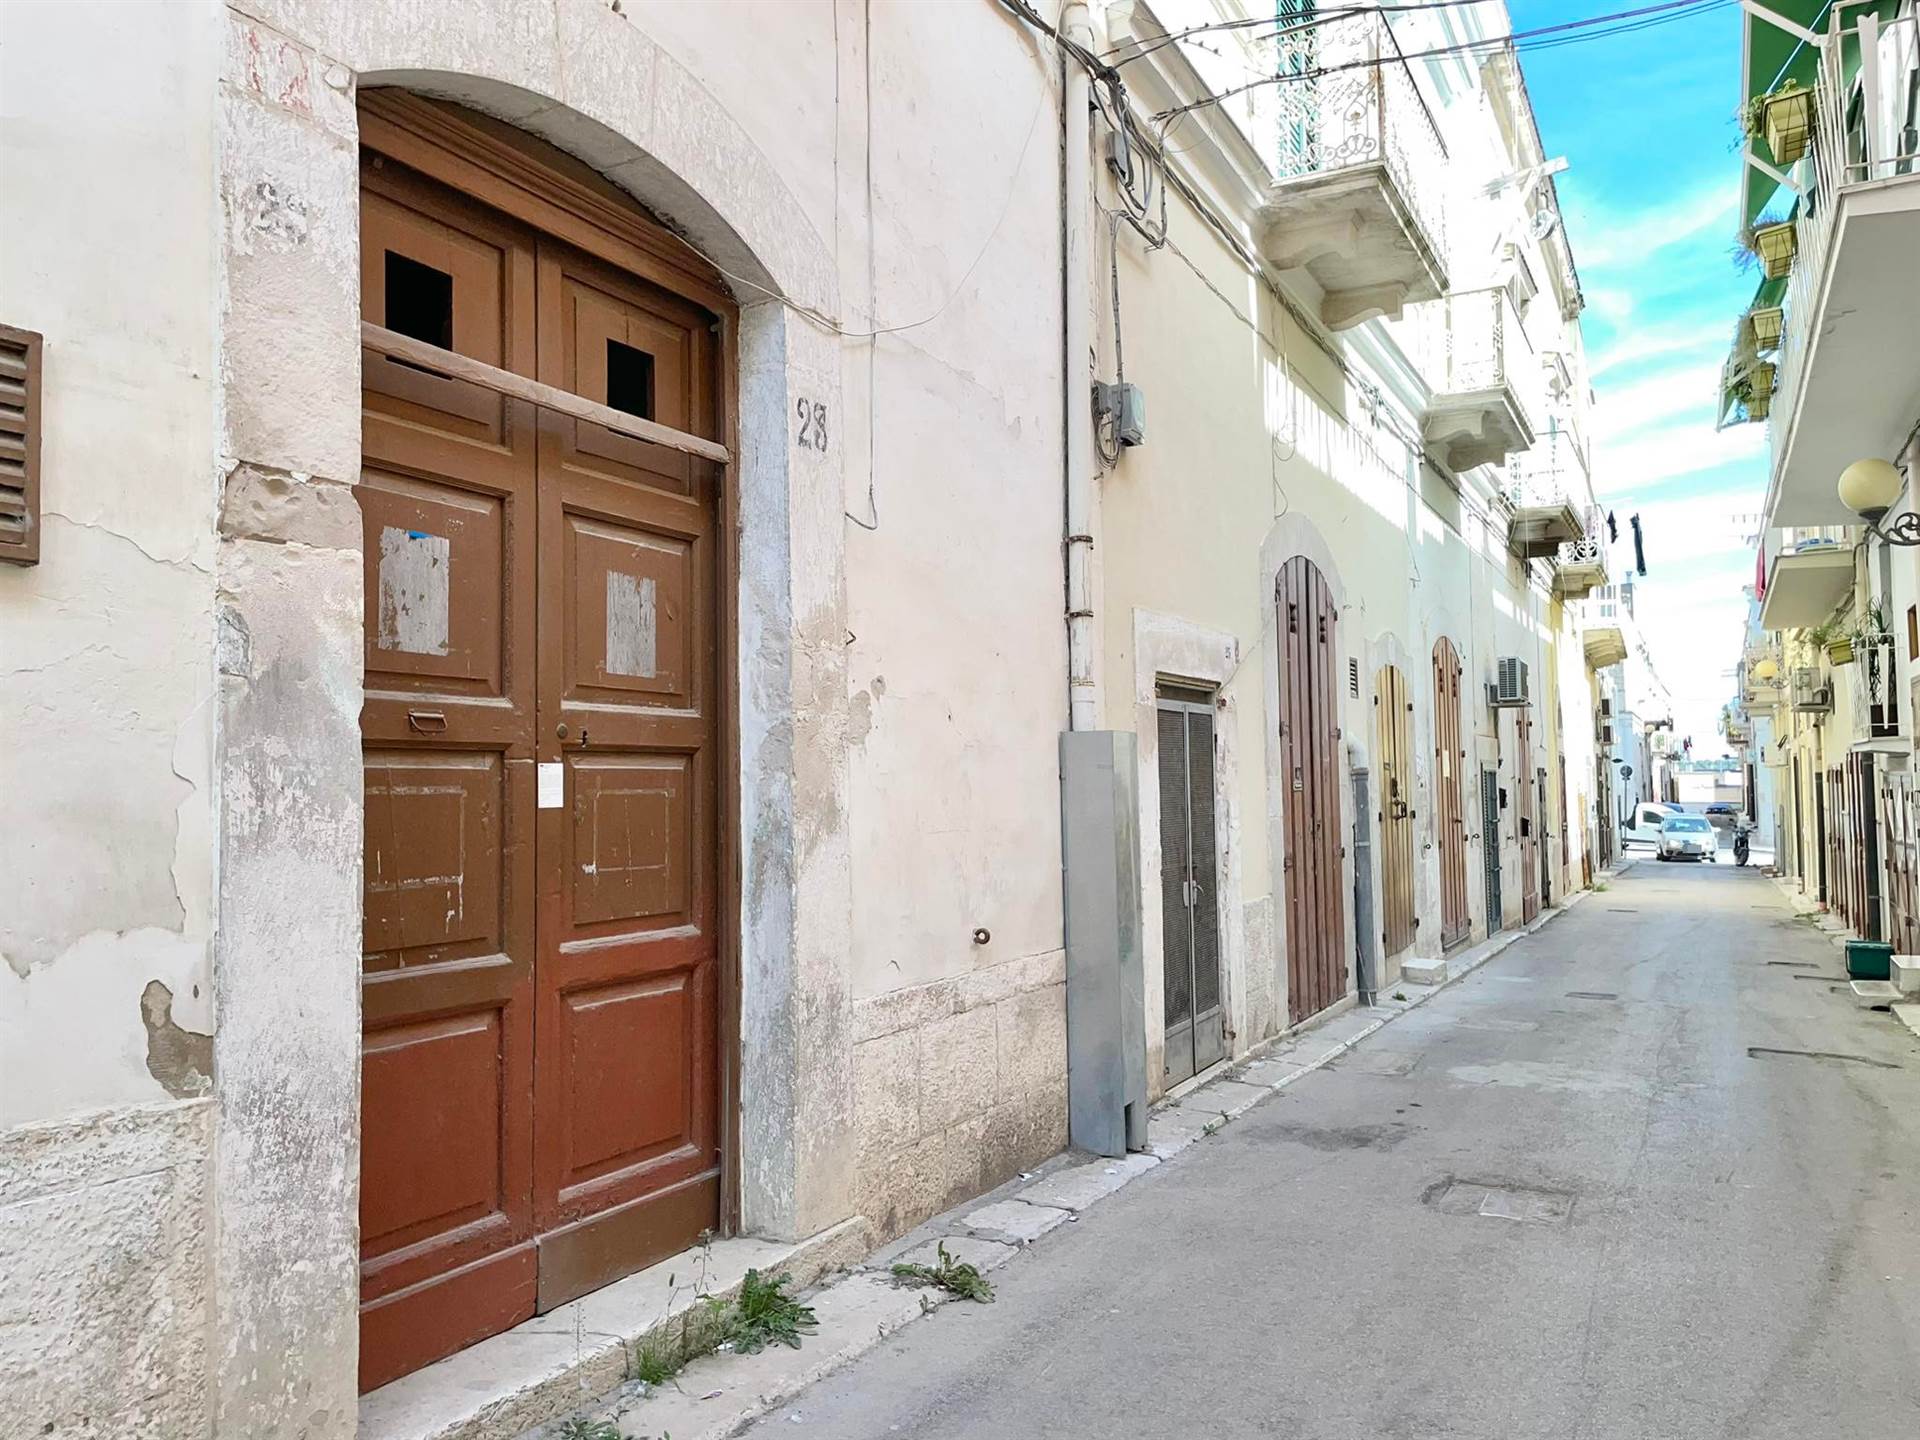 DESCRIZIONE: In una traversa del centralissimo Corso San Sabino, proponiamo la vendita di un’abitazione indipendente ubicata a piano terra, della 